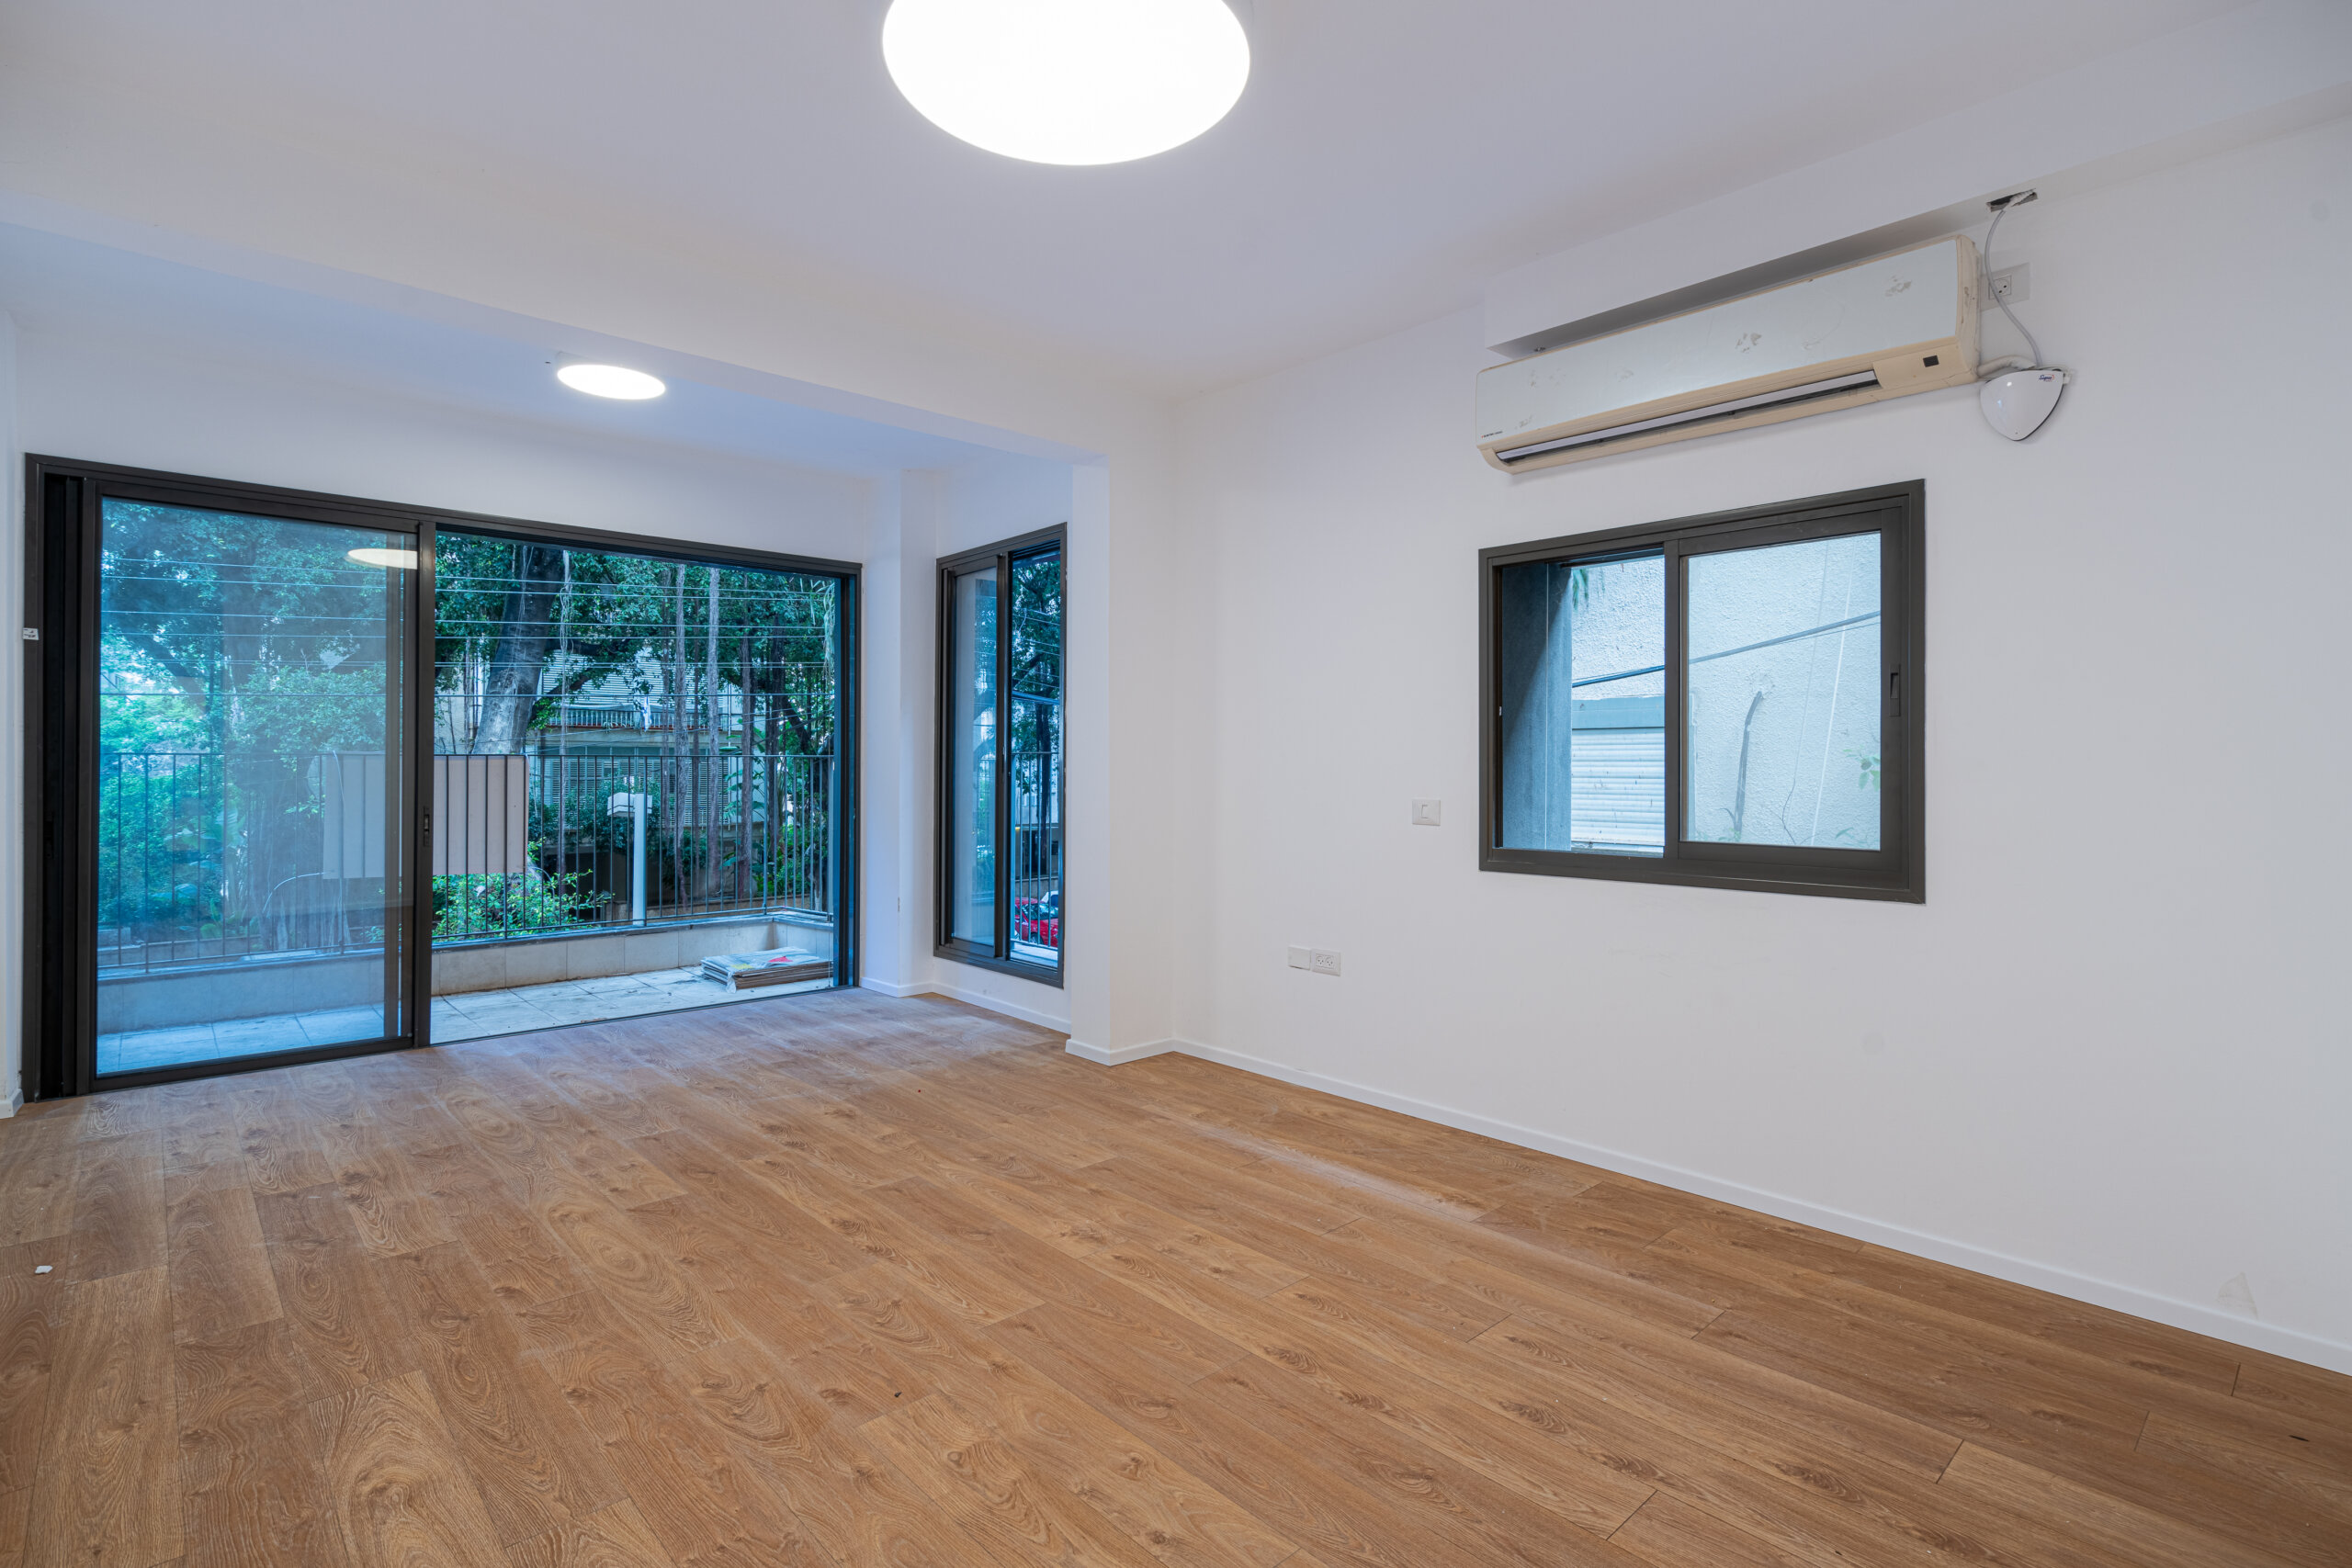 דירה חדשה למכירה בתל אביב